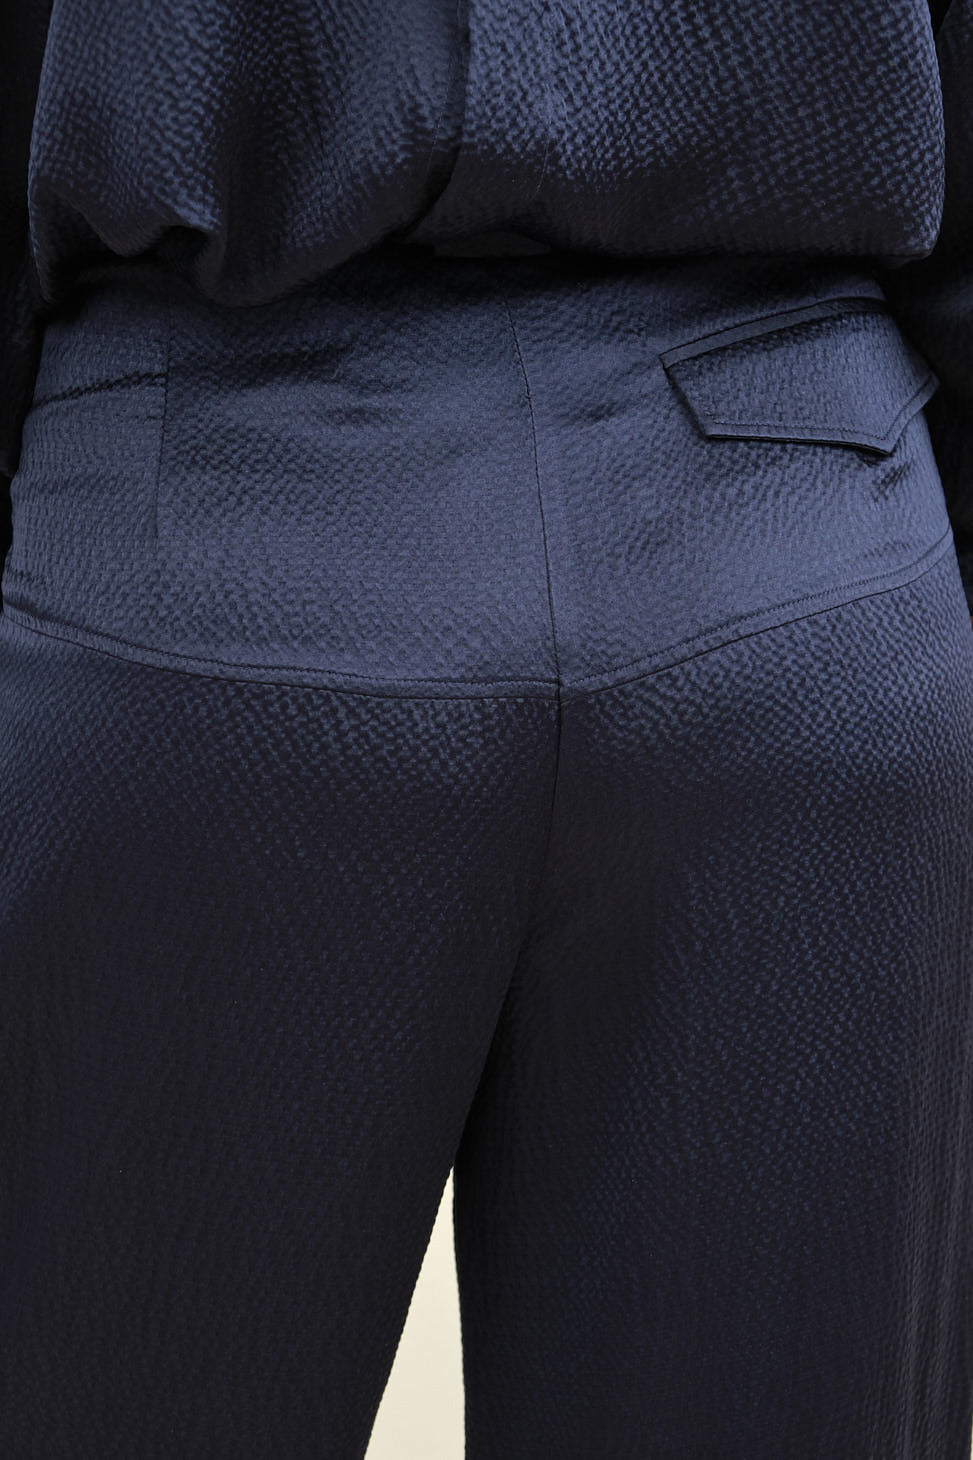 Back detailing on Cropped Divide Pant